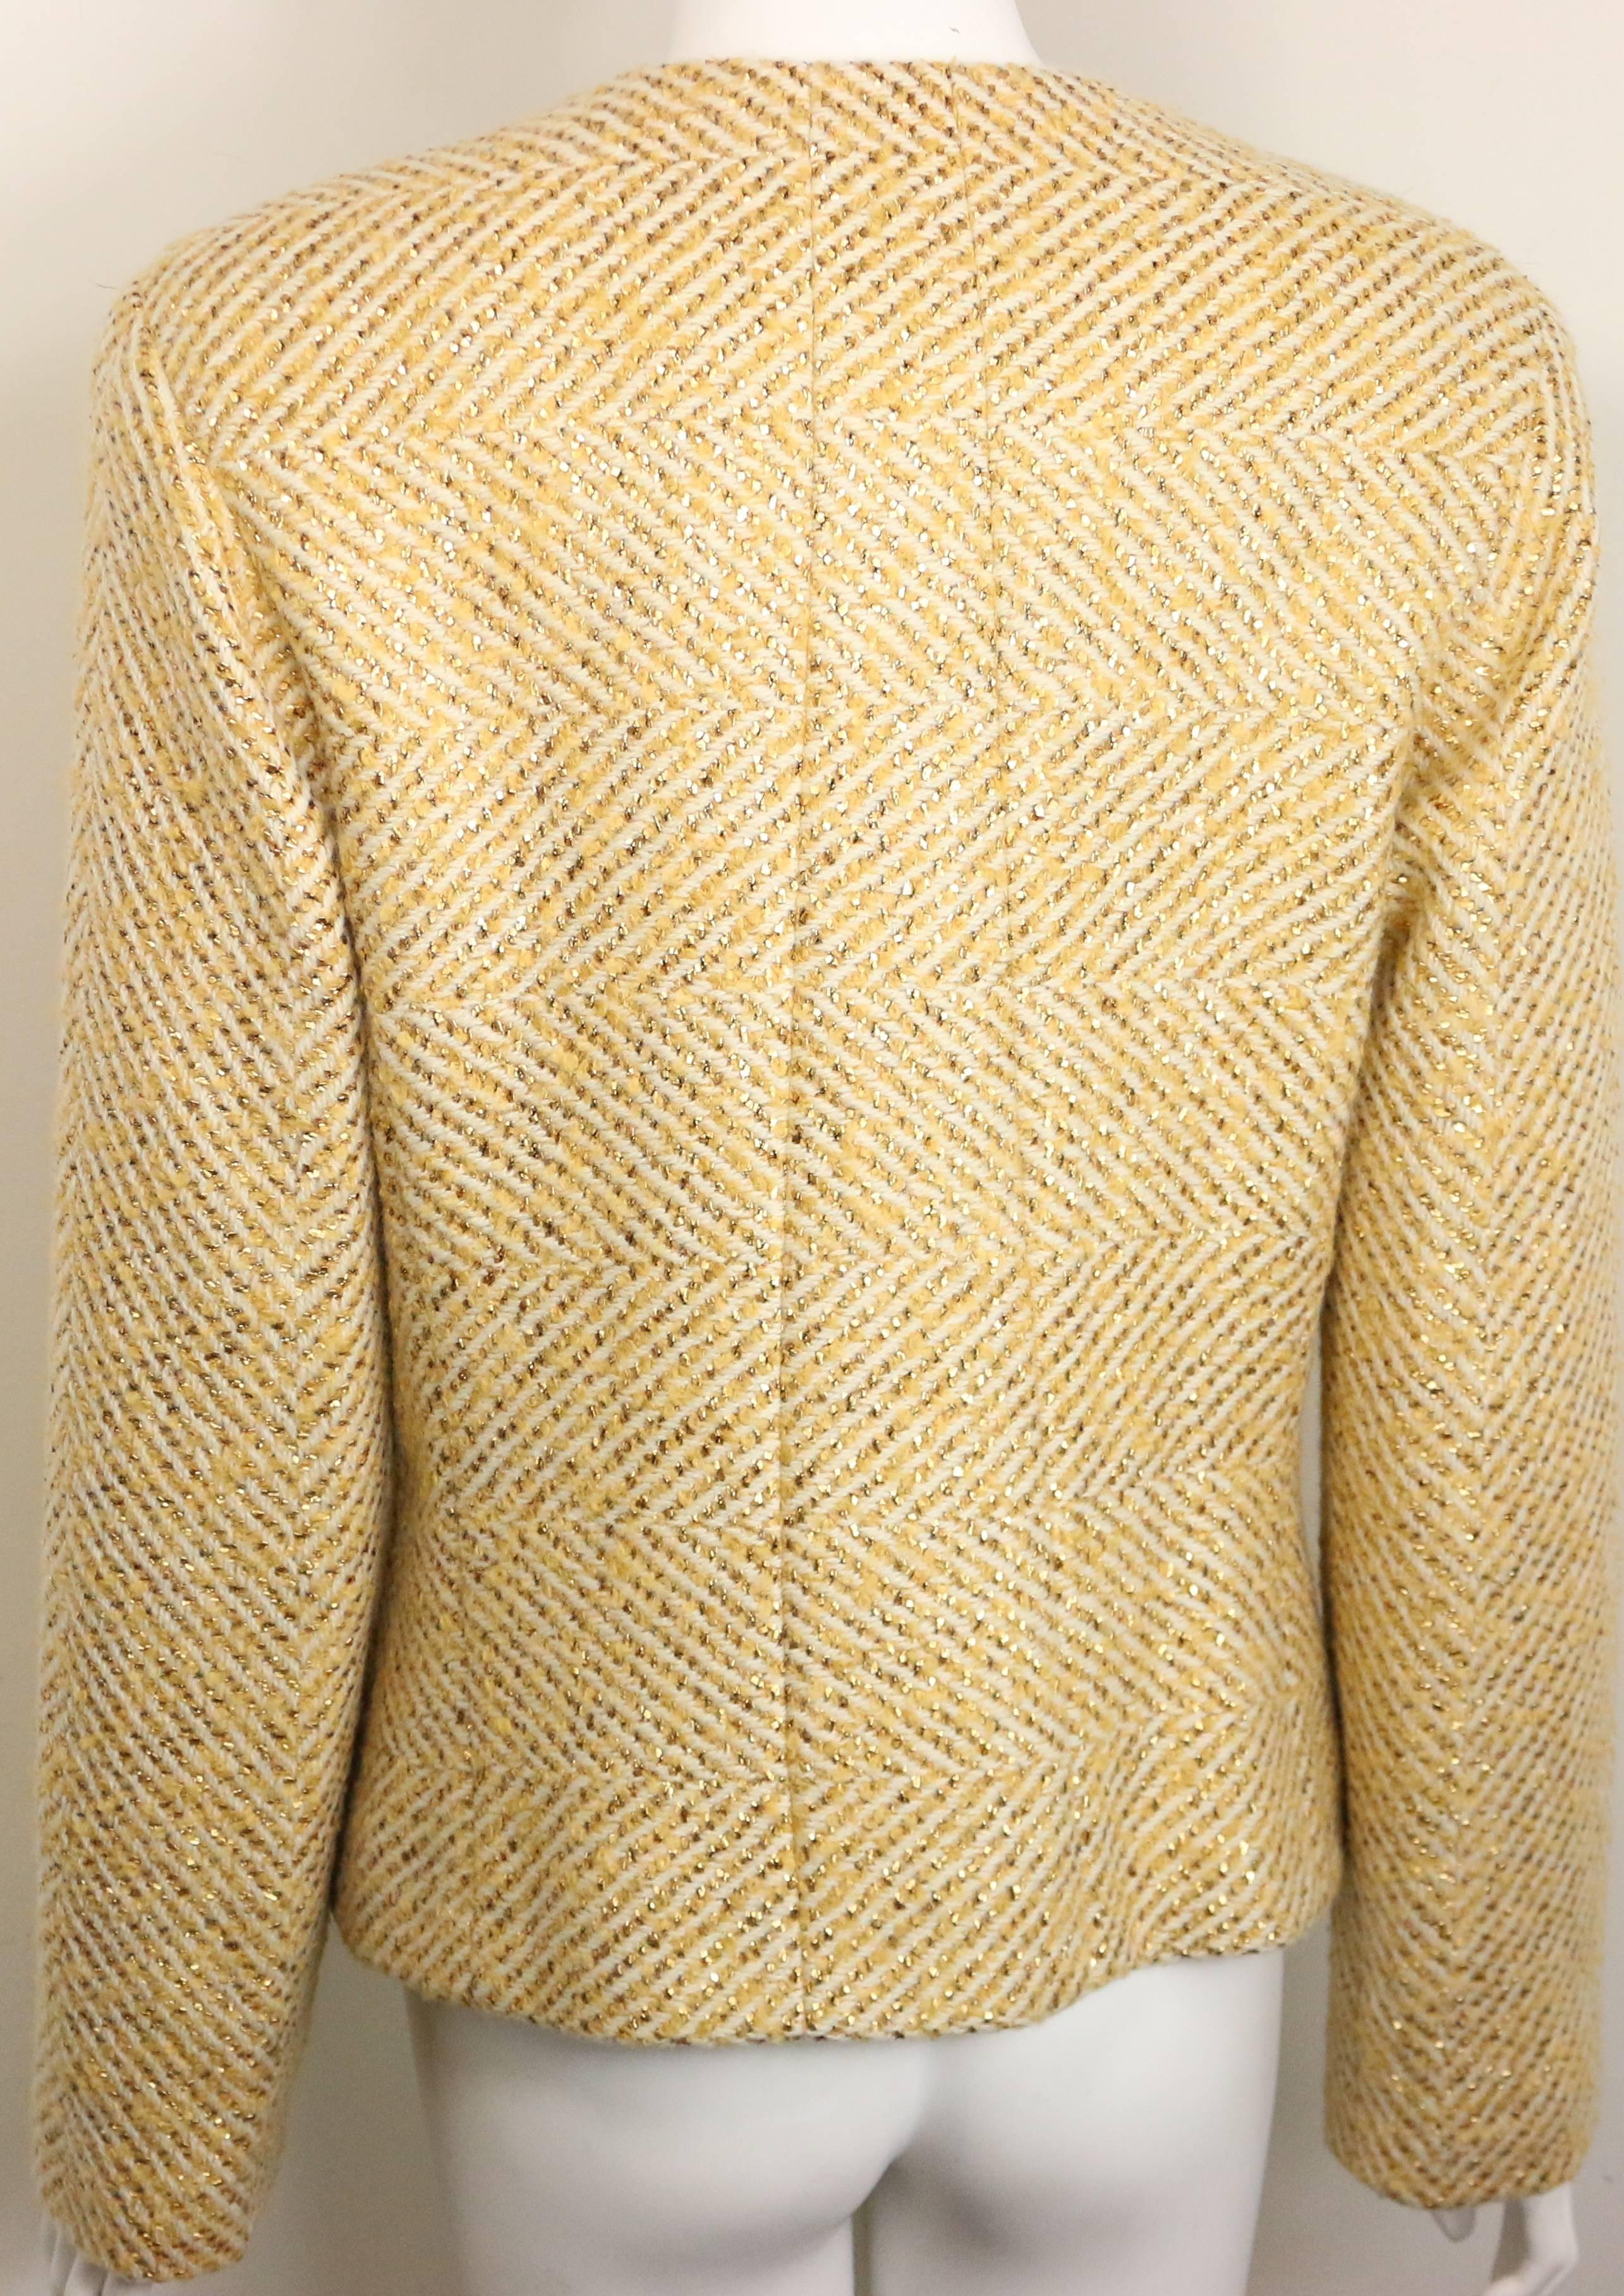 - Vintage Chanel goldfarbene, glitzernde, cremefarbene Chevron-Tweed-Schaljacke aus der Herbstkollektion 2000. 

- Mit vier abgeflachten goldfarbenen Metallknöpfen 